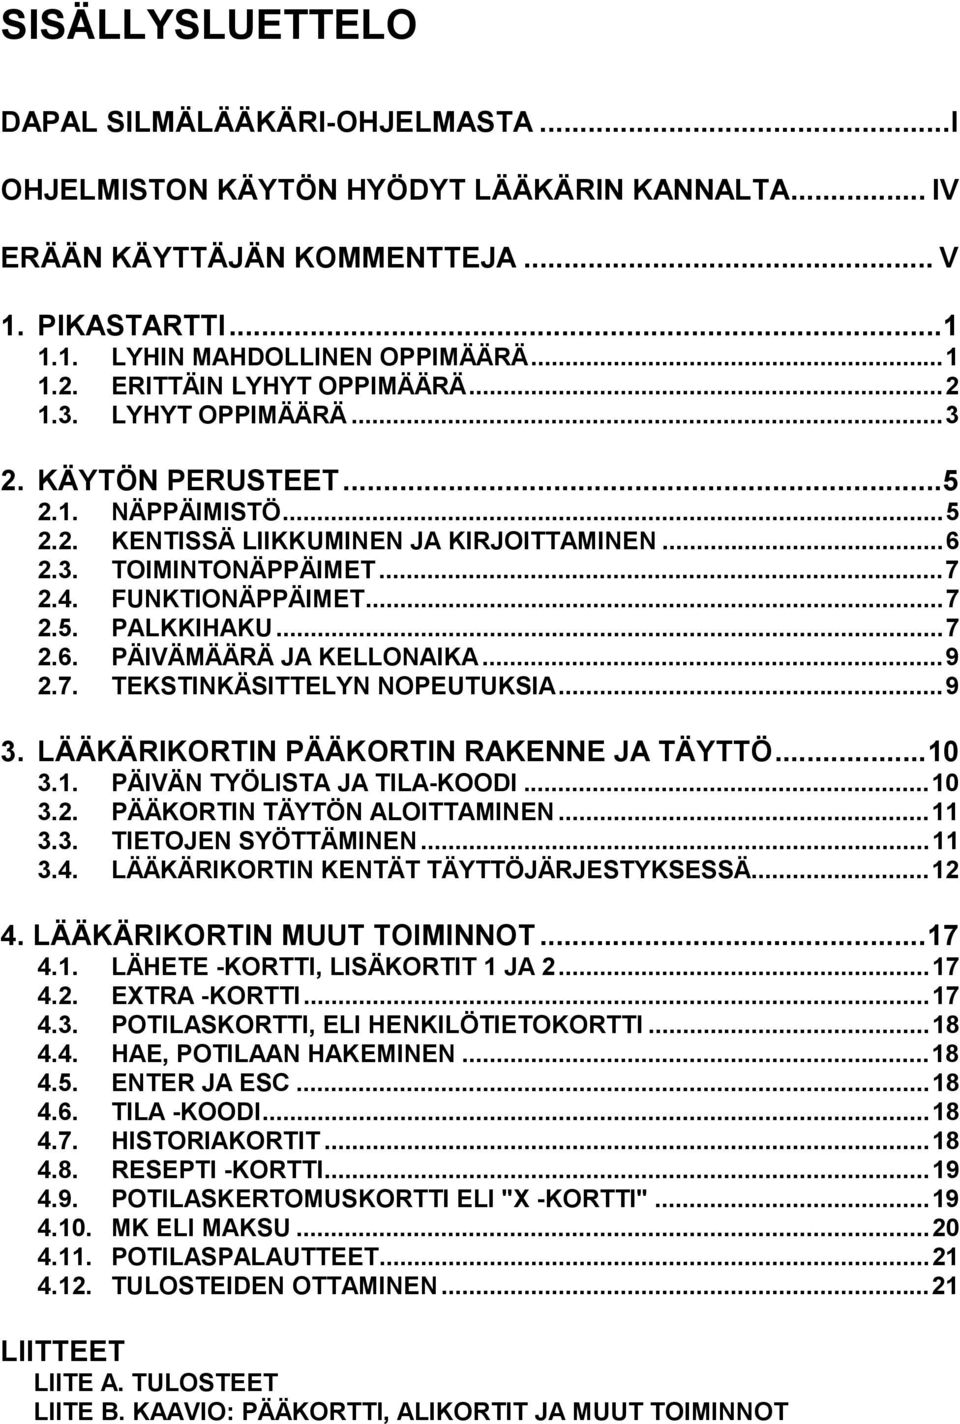 ..7 2.6. PÄIVÄMÄÄRÄ JA KELLONAIKA...9 2.7. TEKSTINKÄSITTELYN NOPEUTUKSIA...9 3. LÄÄKÄRIKORTIN PÄÄKORTIN RAKENNE JA TÄYTTÖ...10 3.1. PÄIVÄN TYÖLISTA JA TILA-KOODI...10 3.2. PÄÄKORTIN TÄYTÖN ALOITTAMINEN.